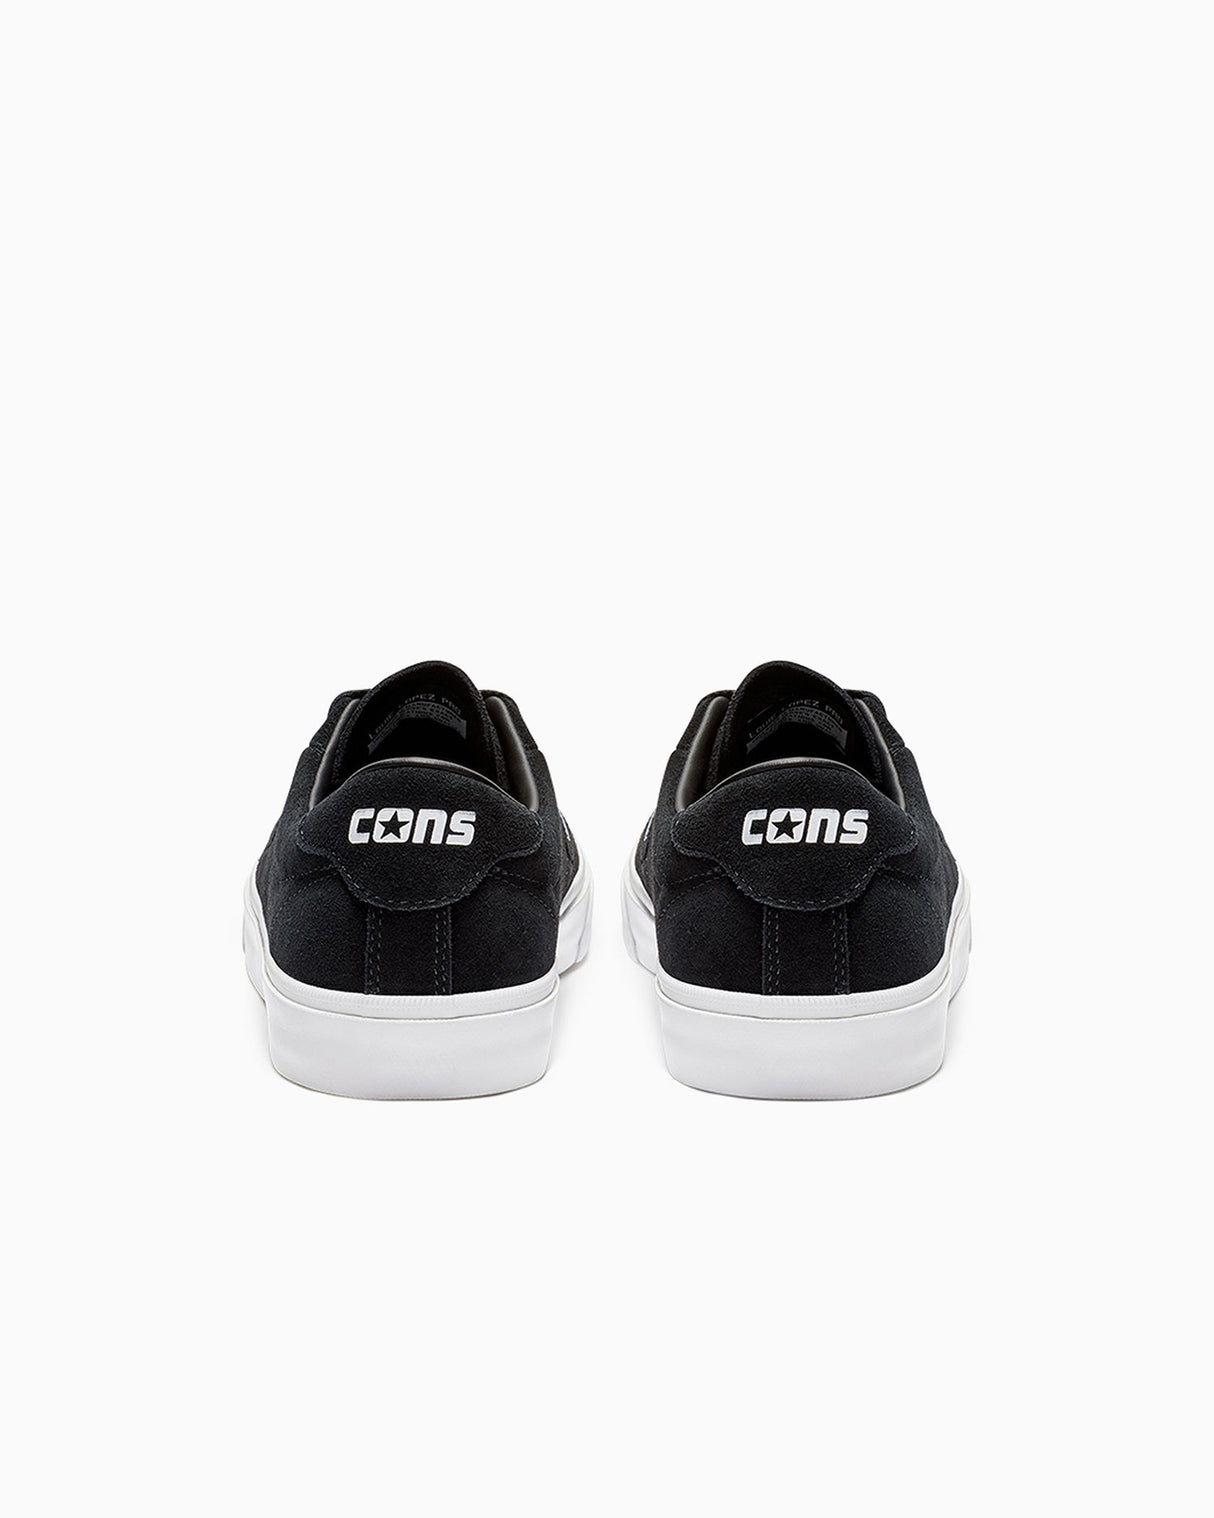 Converse CONS Louie Lopez Pro Low Shoes